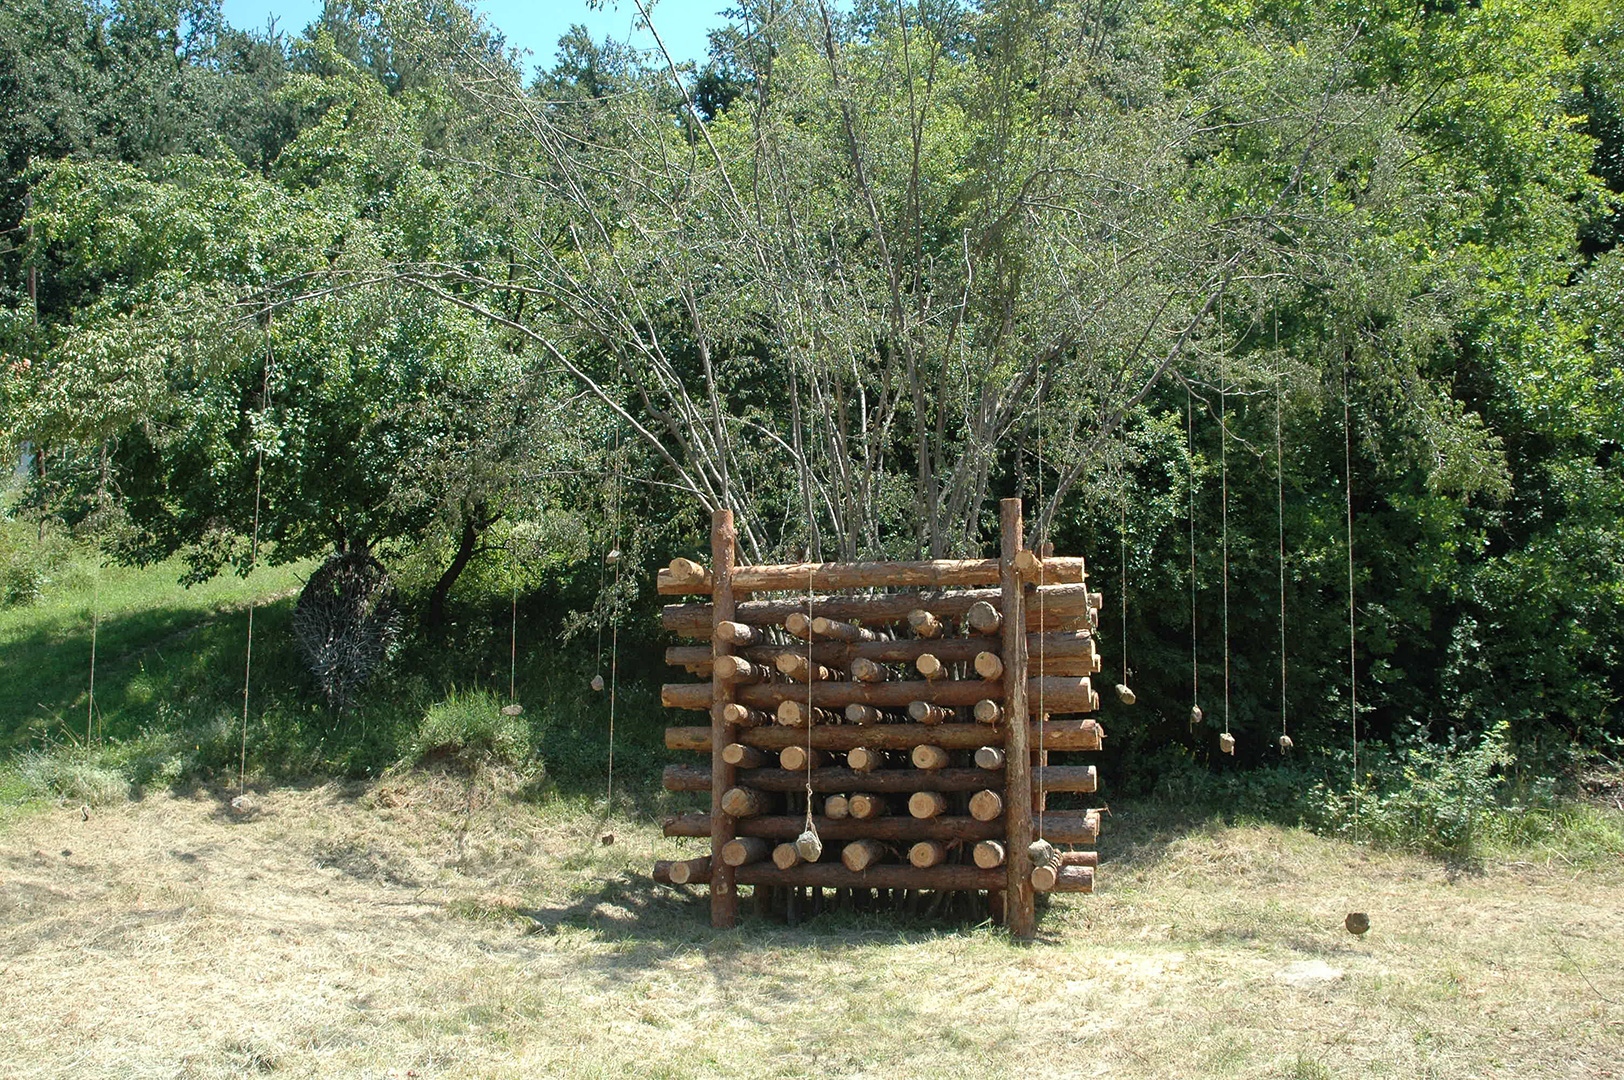 Statikus jel. Bulgária 2013. 60x300x300 cm